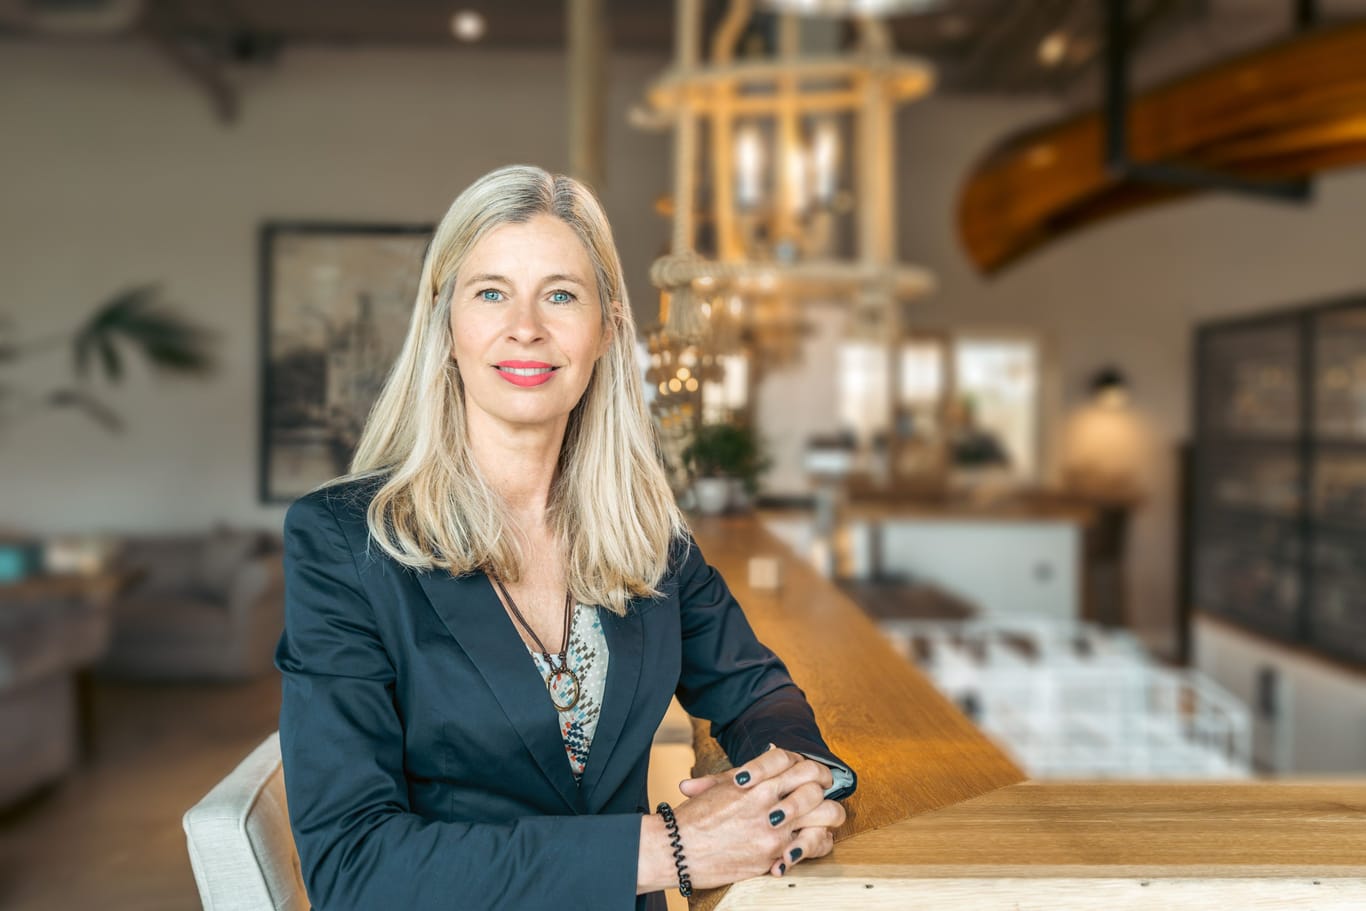 Zuständig für 280 Mitarbeiter: Christiane Wald ist Personalchefin beim Wohnungsunternehmen d.i.i. Deutsche Invest Immobilien AG.